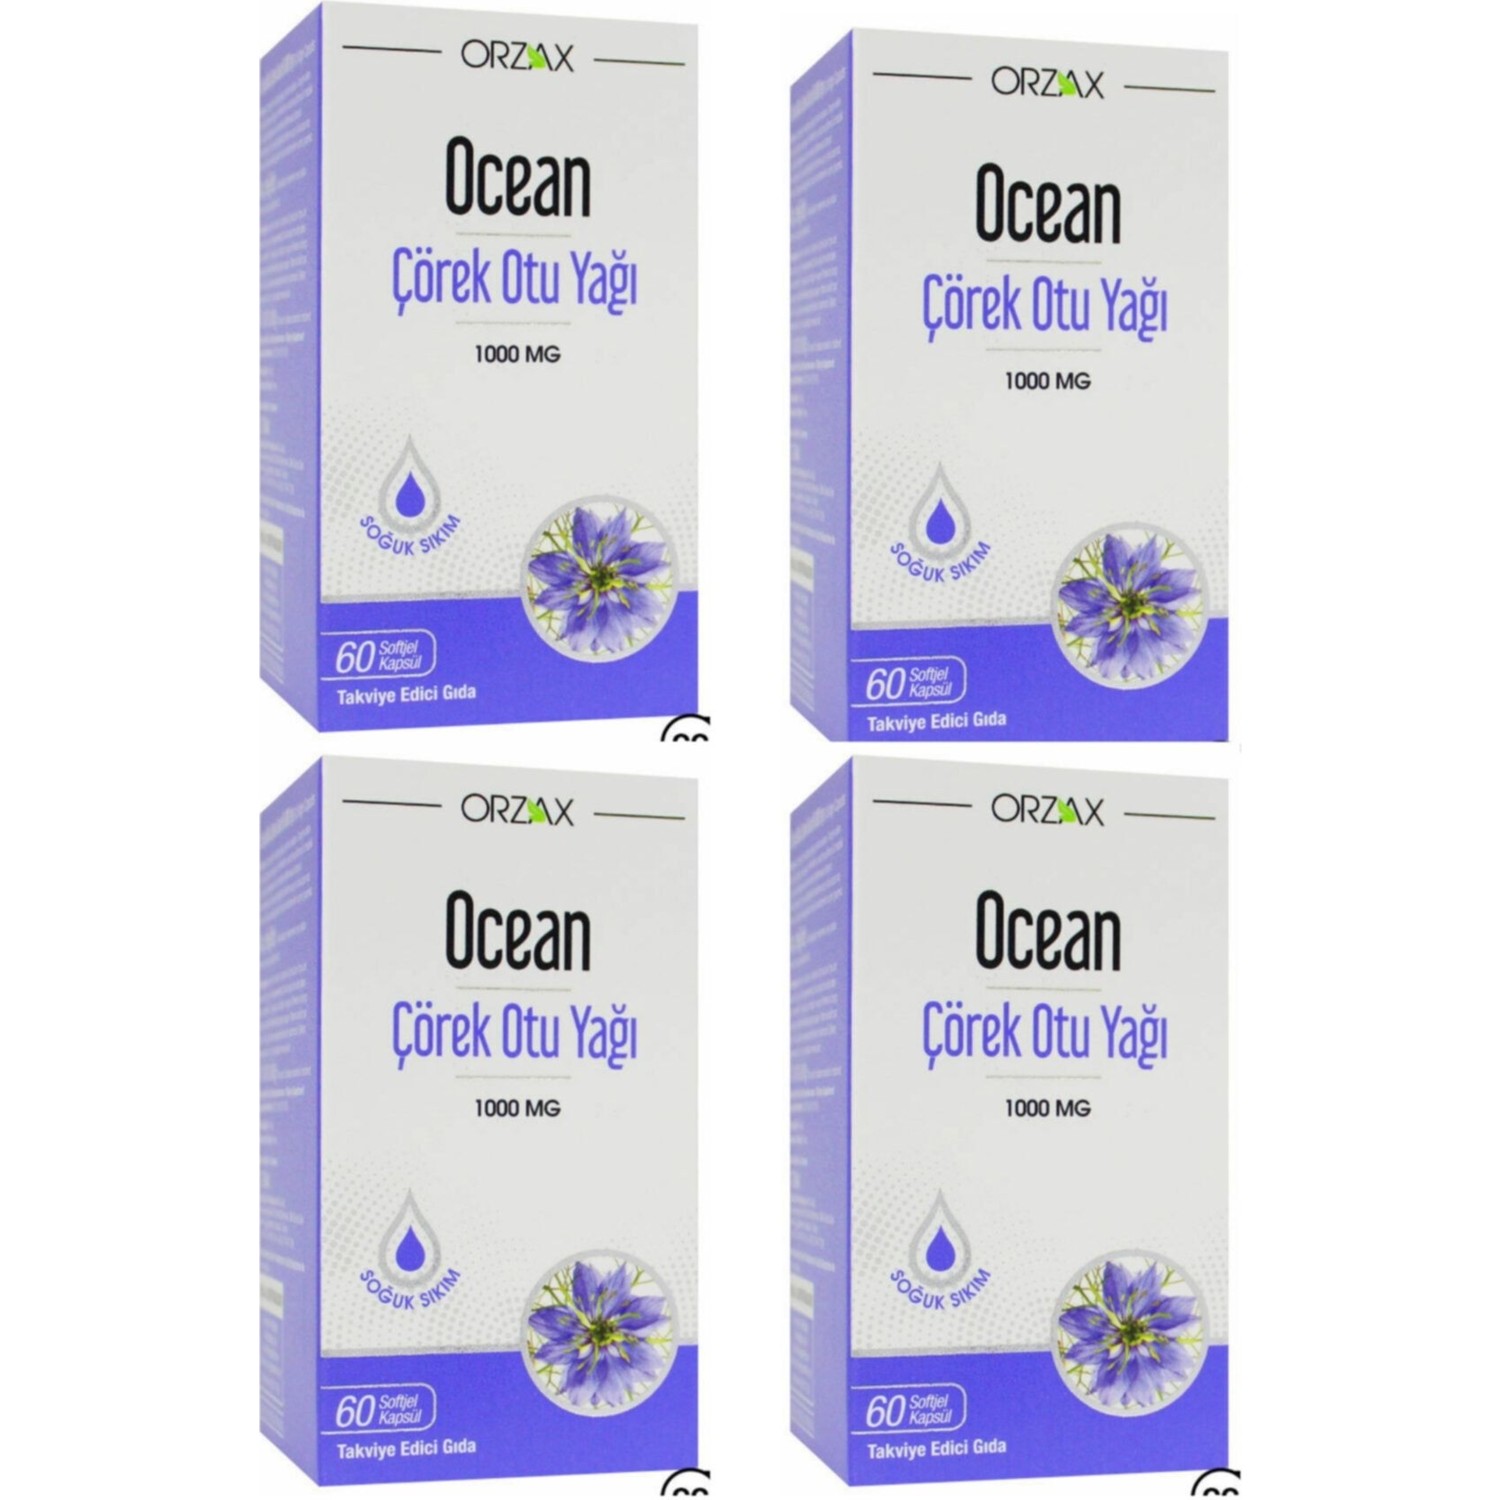 Масло черного тмина Ocean 1000 мг, 4 упаковки по 60 капсул proper vvt black cumin seed oil 1000mg 90caps